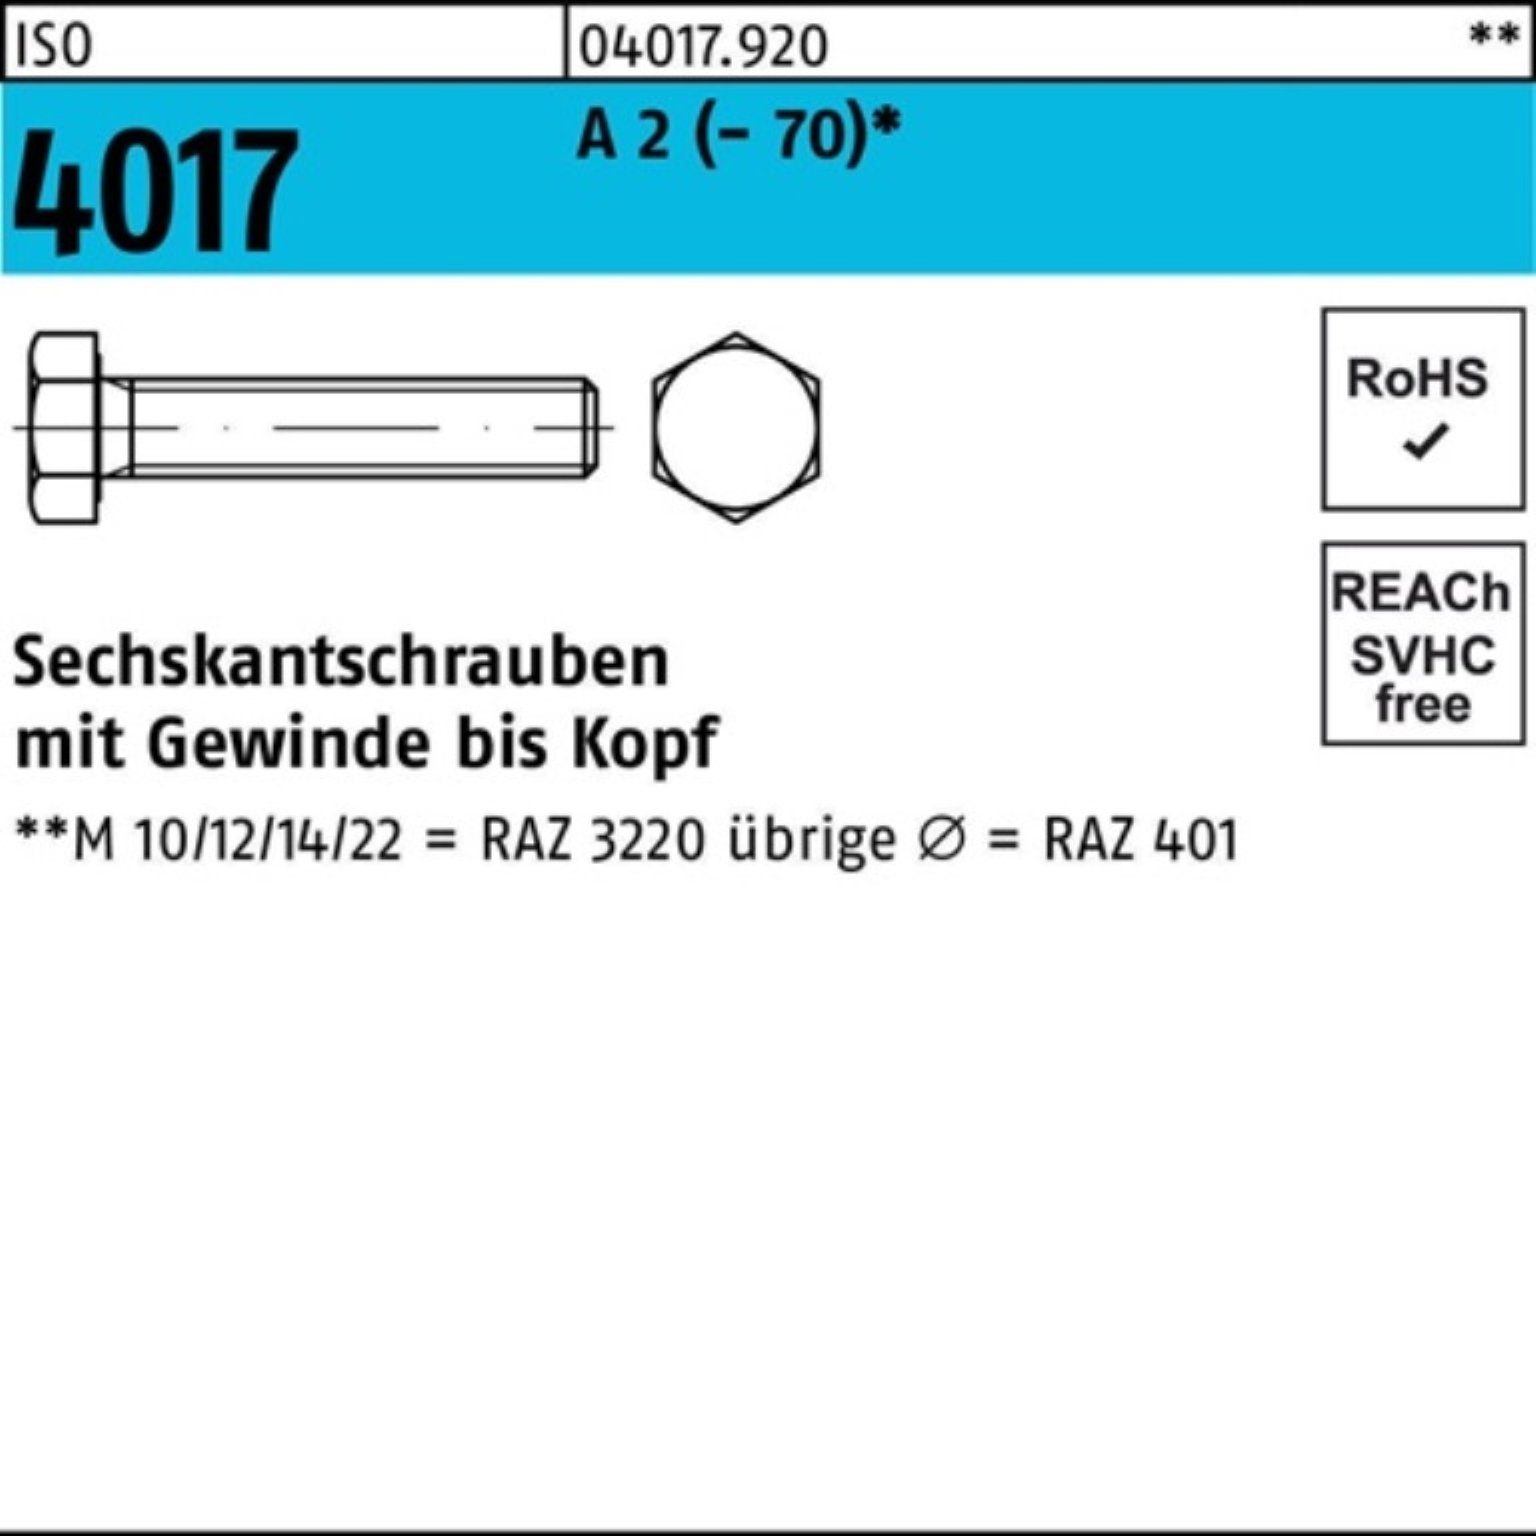 Bufab Sechskantschraube 100er Pack Sechskantschraube ISO 4017 VG M33x 120 A 2 (70) 1 Stück